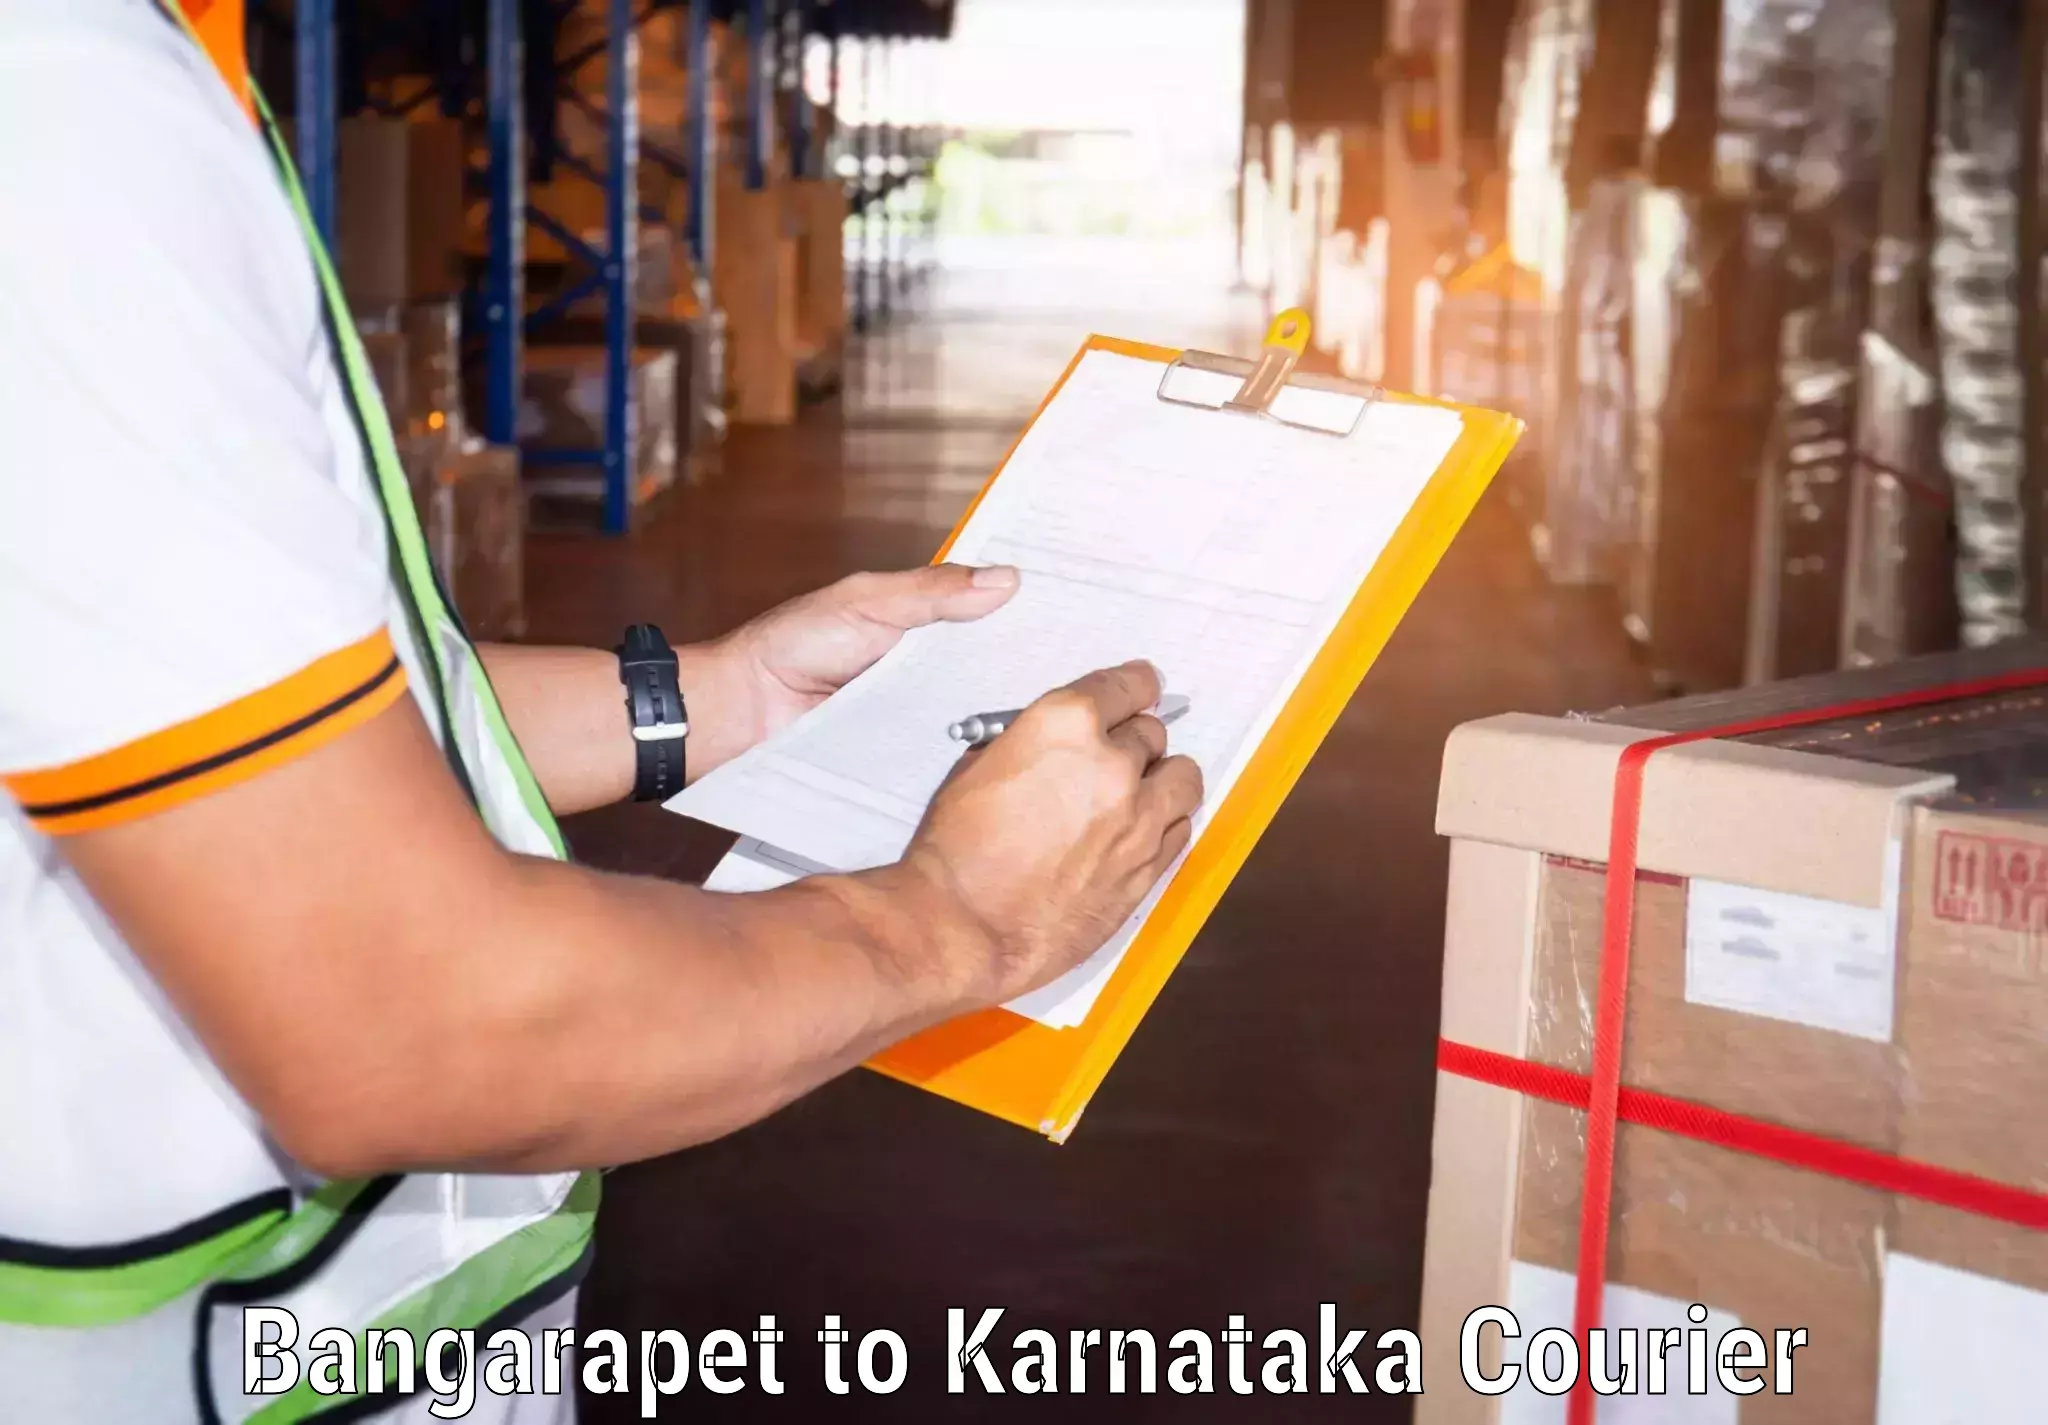 Reliable freight solutions Bangarapet to Kalaburagi